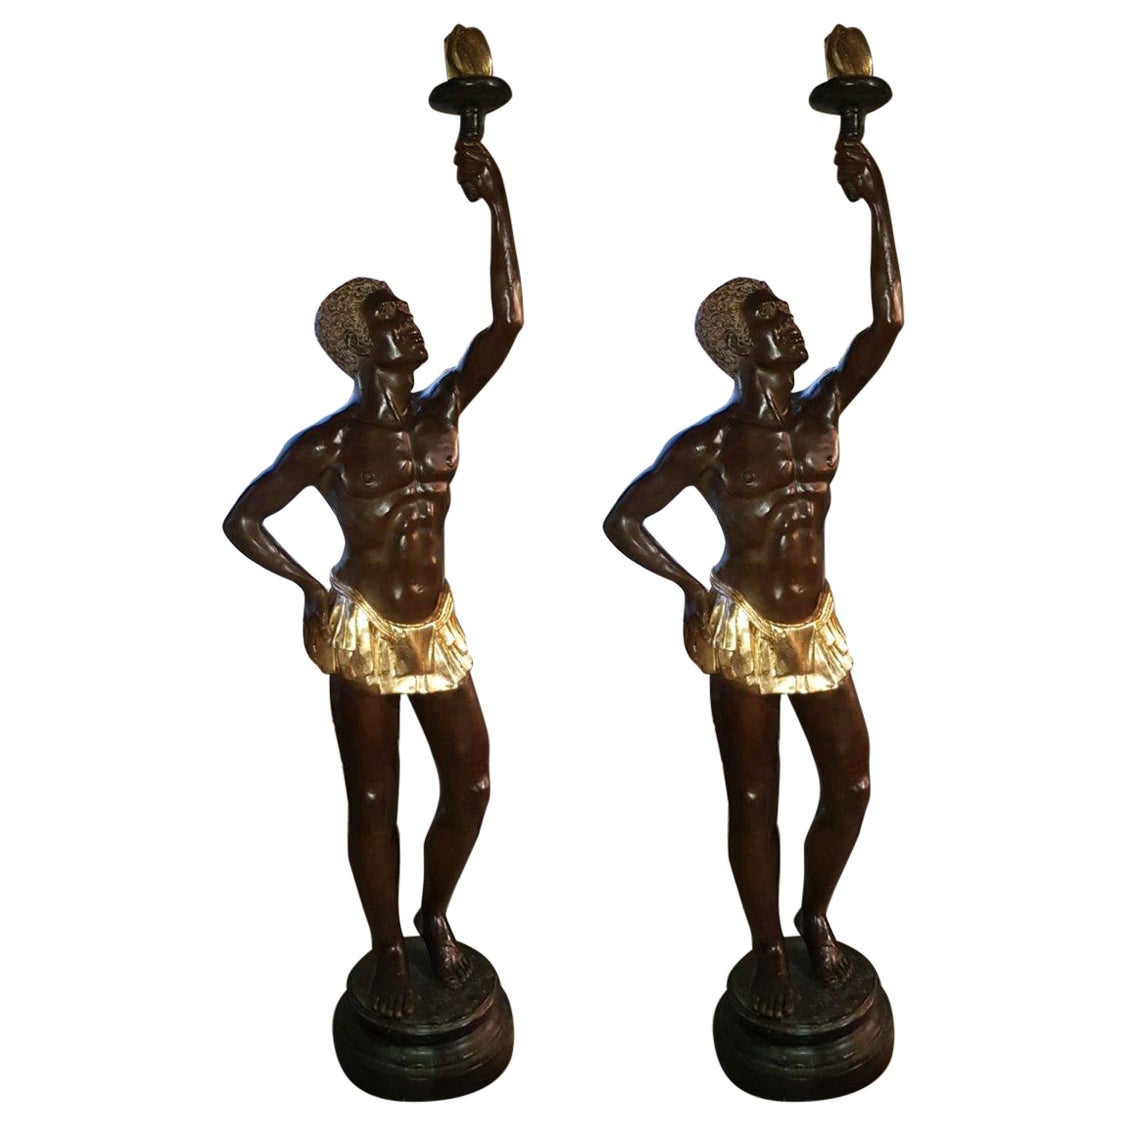 Paire de statuettes géantes en bronze représentant des nus emportant des torches